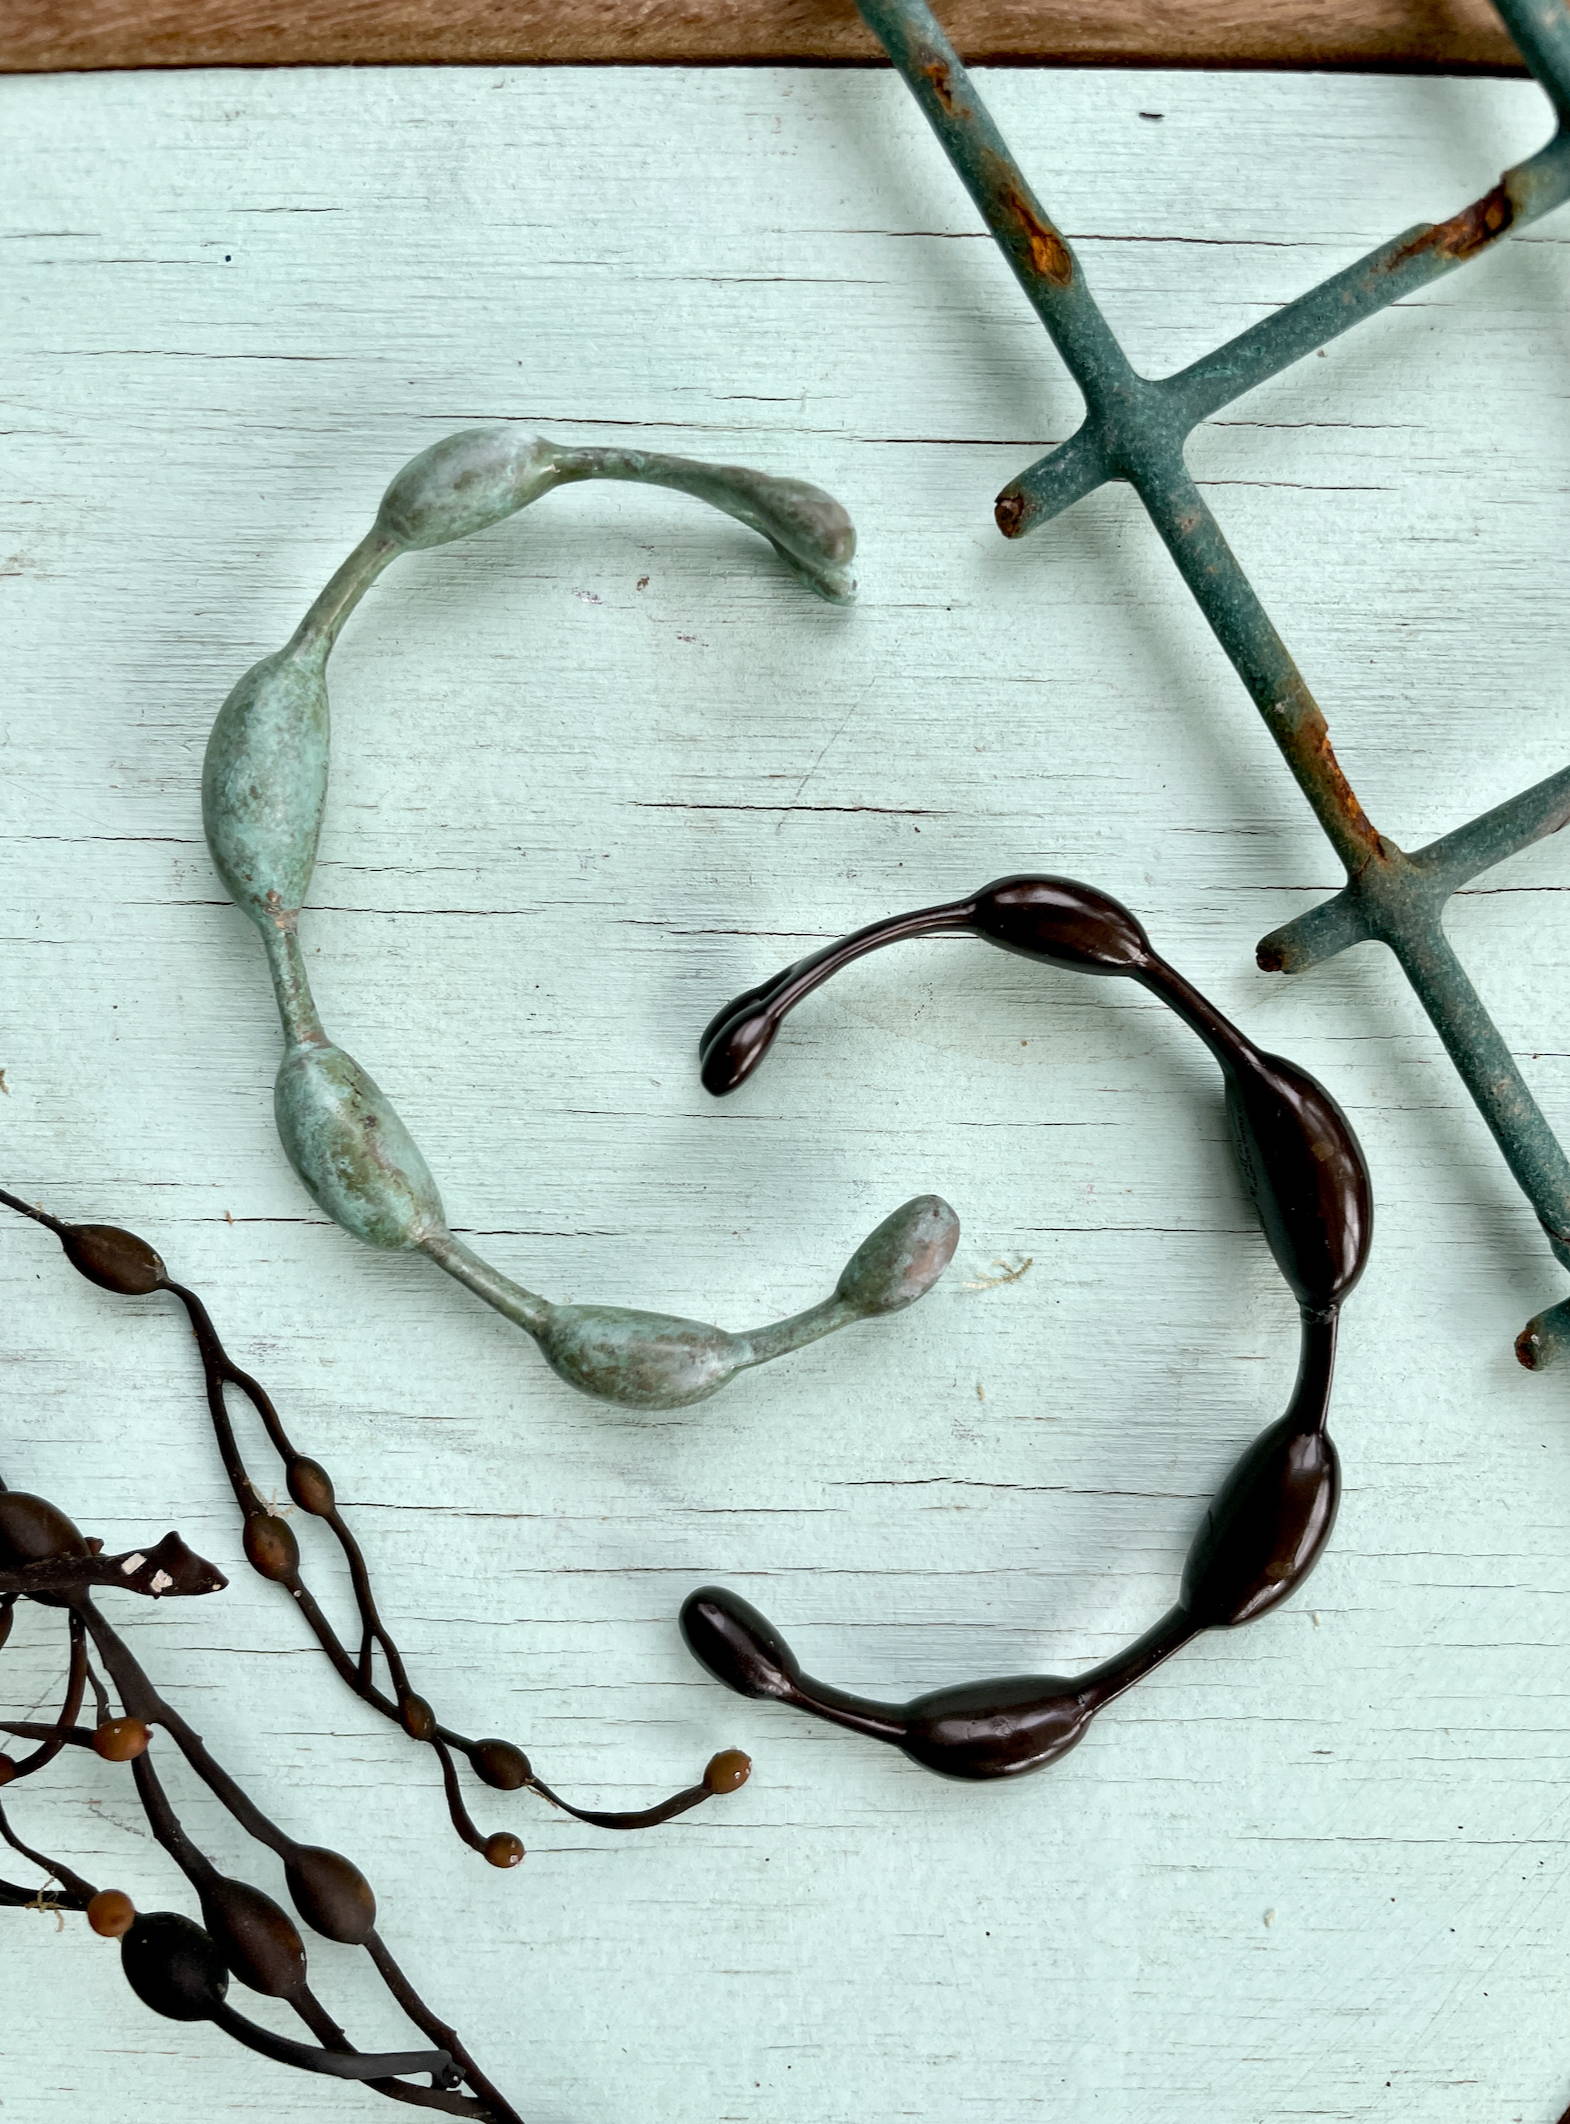 seaweed bracelets in seaside teal patina and summer night black